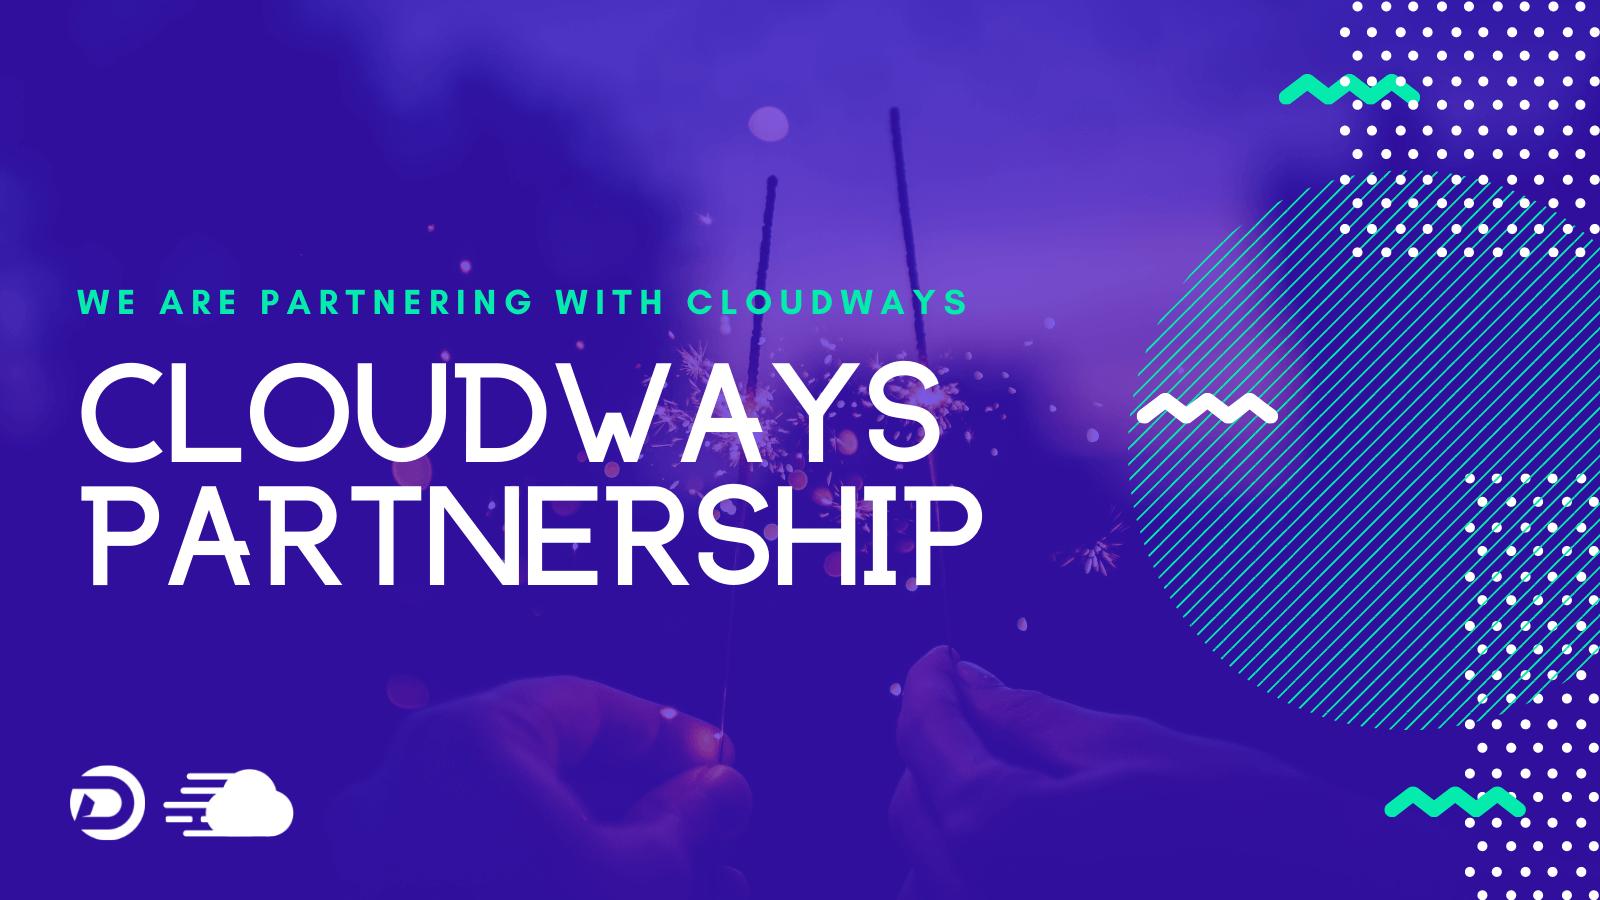 Cloudways Partnership